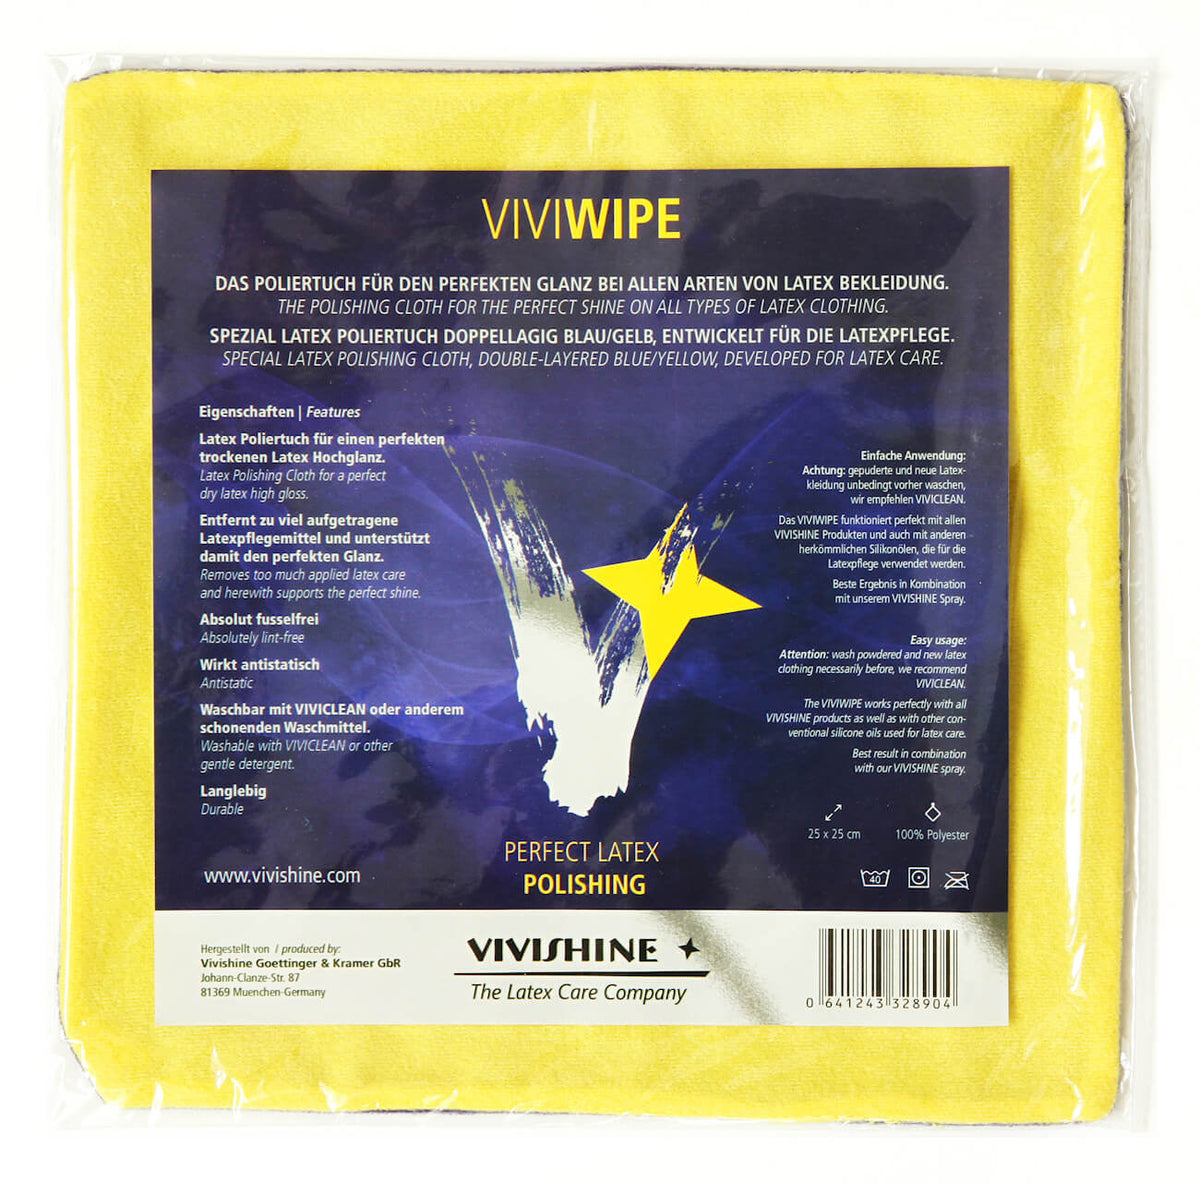 Vivishine Viviwipe | Latex Polishing Cloth - Haus of Montagu